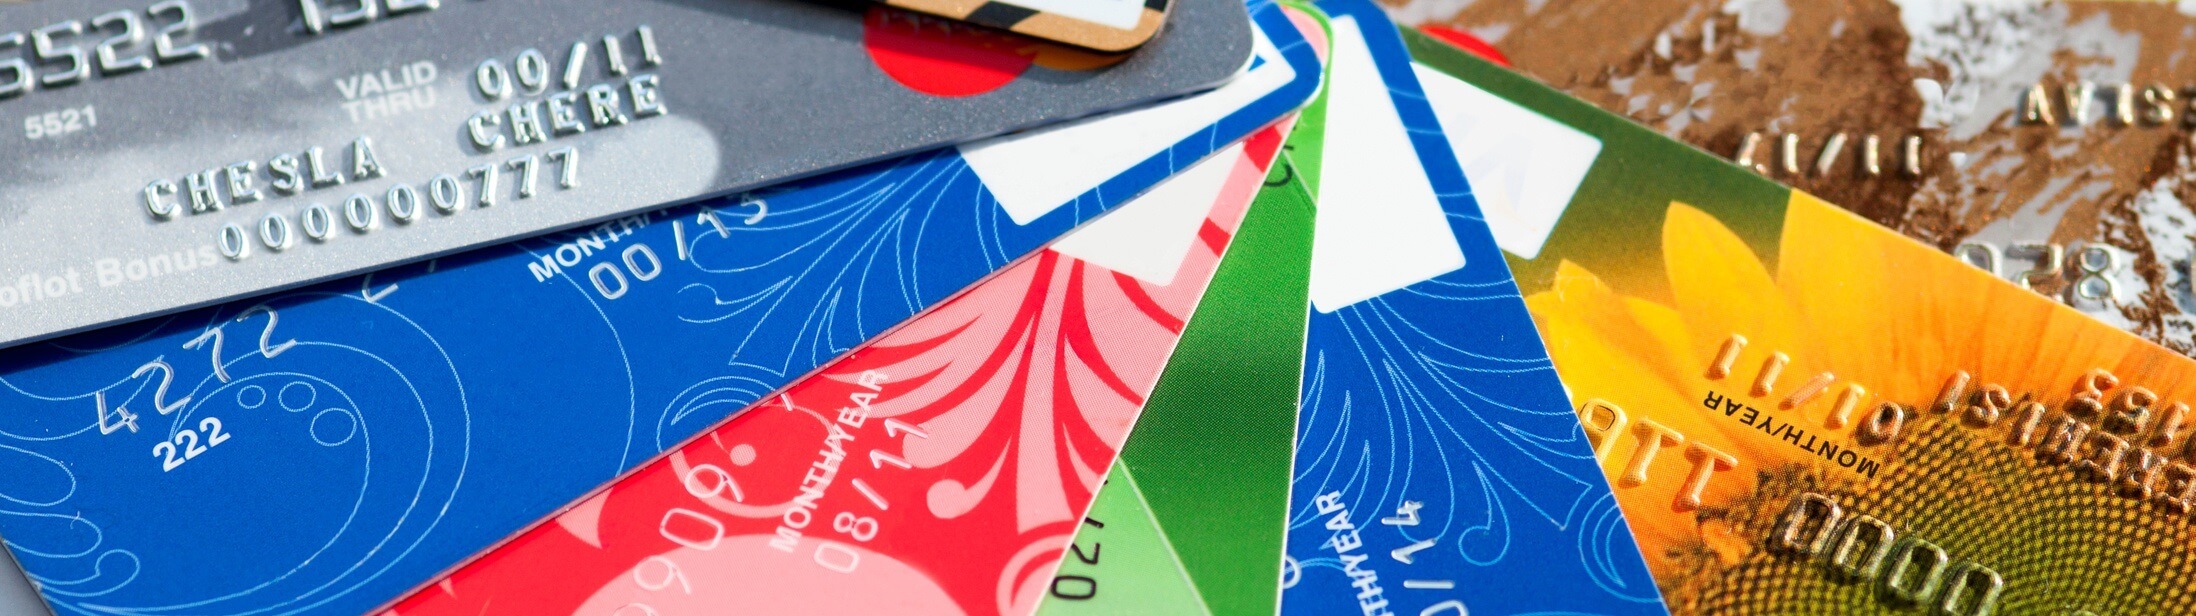 Sind N26-Kreditkarten "echte" Kreditkarten? Alles zu Kreditkartentypen, Unterschieden und Besonderheiten!